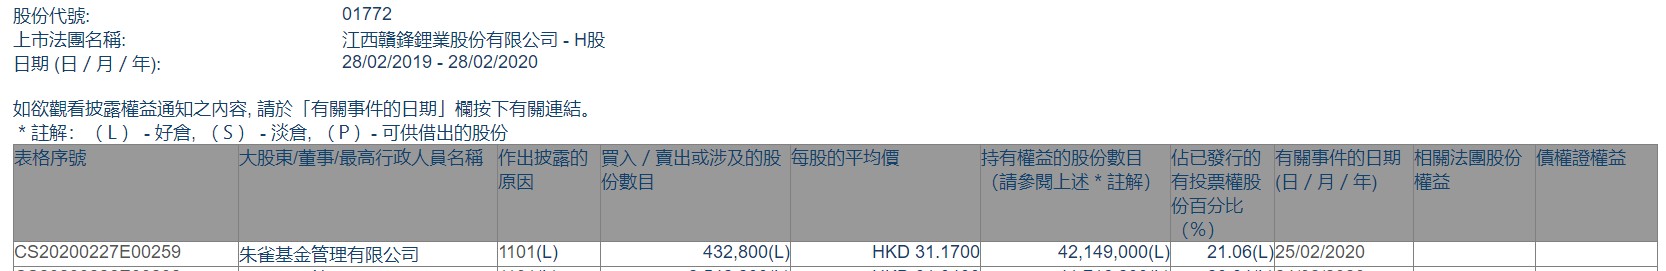 朱雀基金增持赣锋锂业(01772)43.28万股 最新持股比例为21.06%